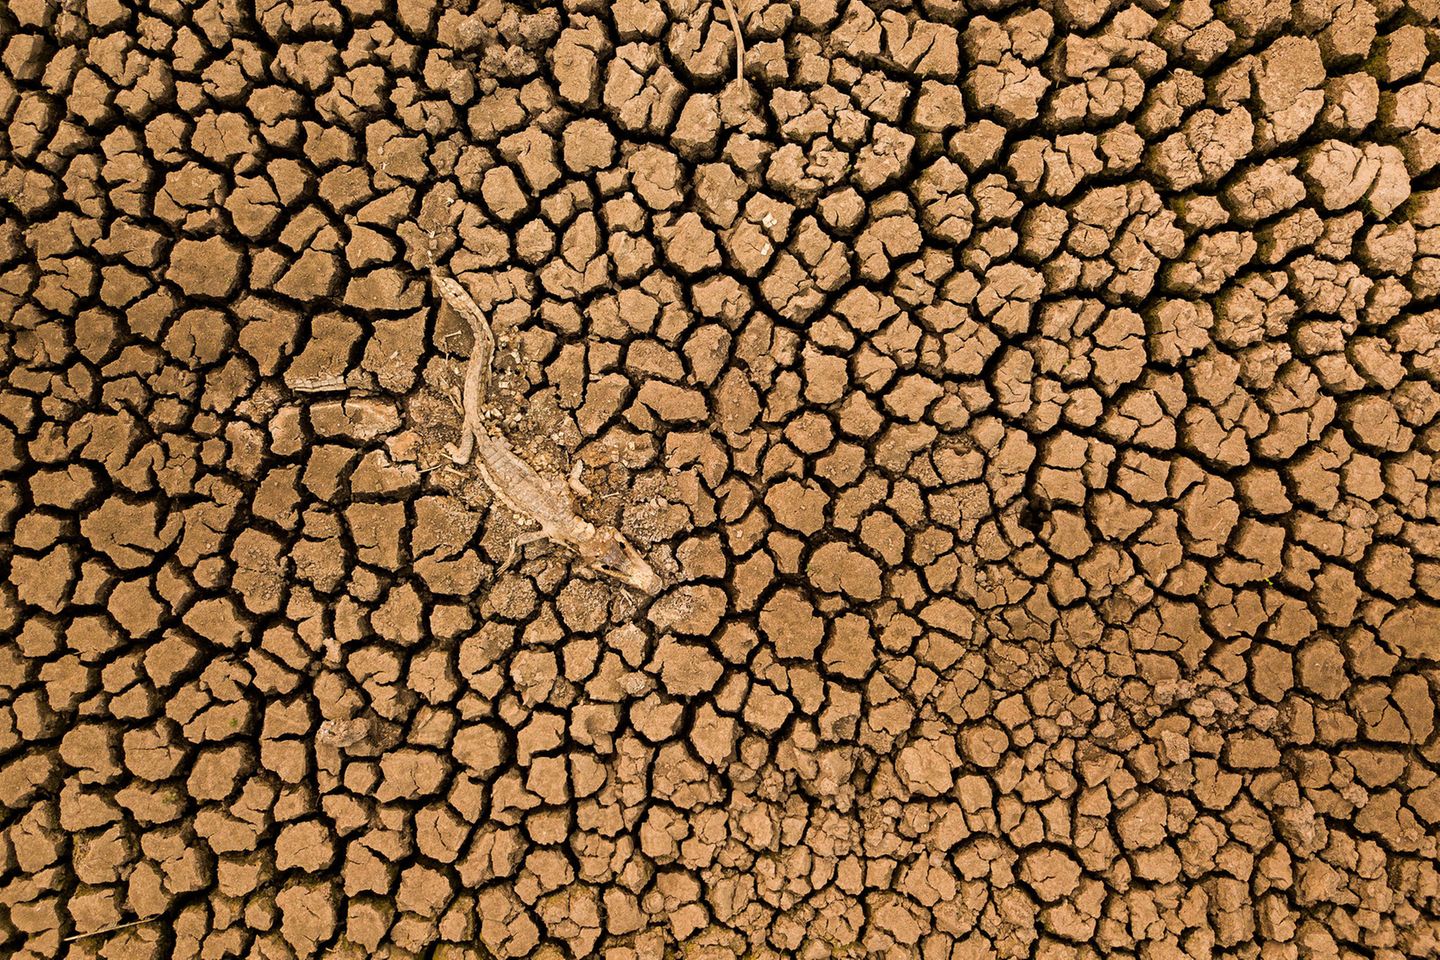 Ein ikonisches Bild der großen Dürre im brasilianischen Pantanal gelingt Daniel De Granville Manço mit einer Drohne. Der Kadaver eines Brillenkaiman liegt auf dem ausgetrocknetem Boden. Das Pantanal ist eines der größten Feuchtgebiete der Erde und seit 2019 von anhaltender Trockenheit betroffen